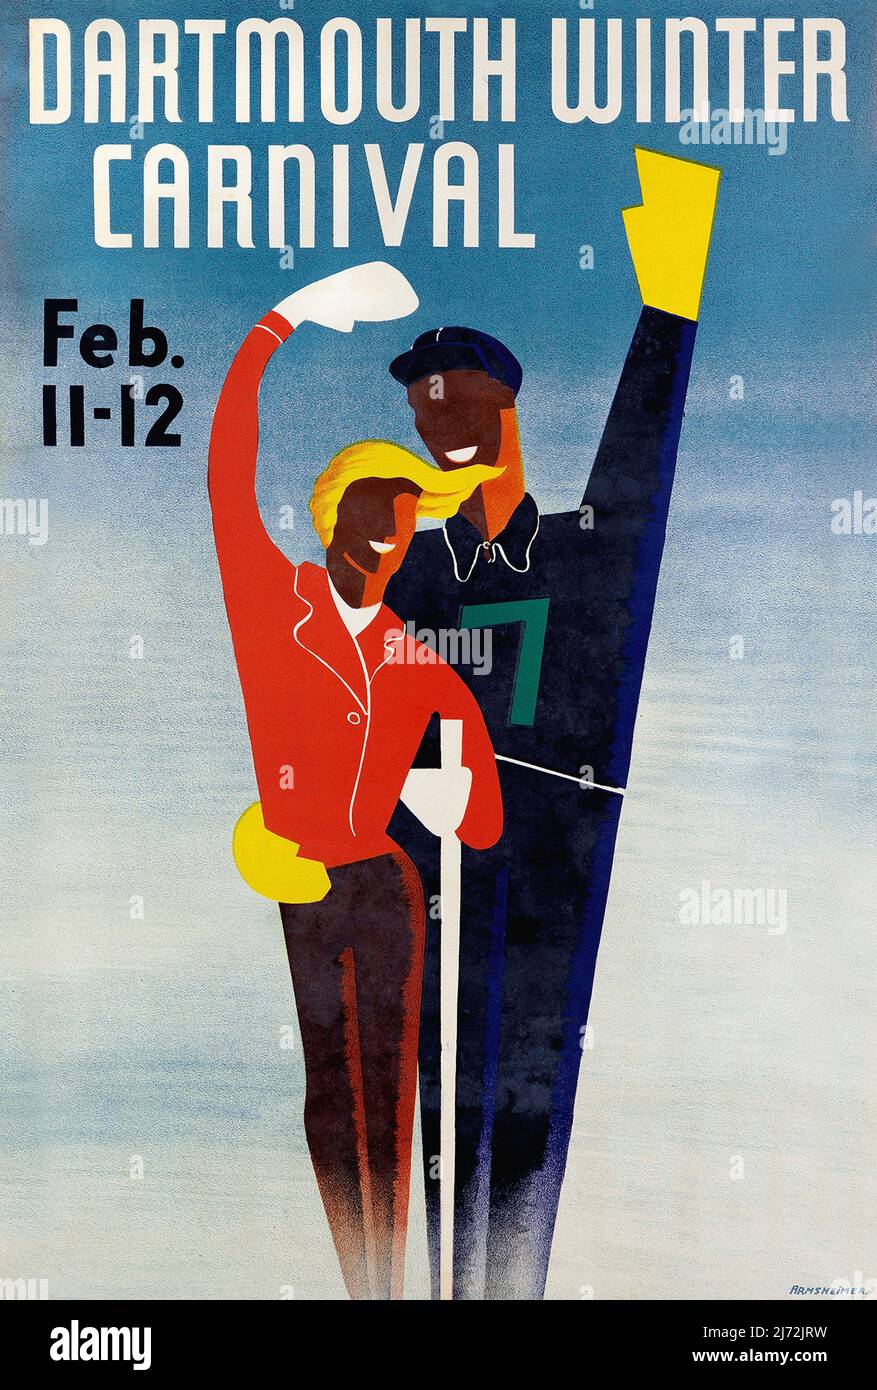 Vintage 1940s Ski Poster - Dartmouth Carnival 1941 - Vintage Ski Poster Stock Photo